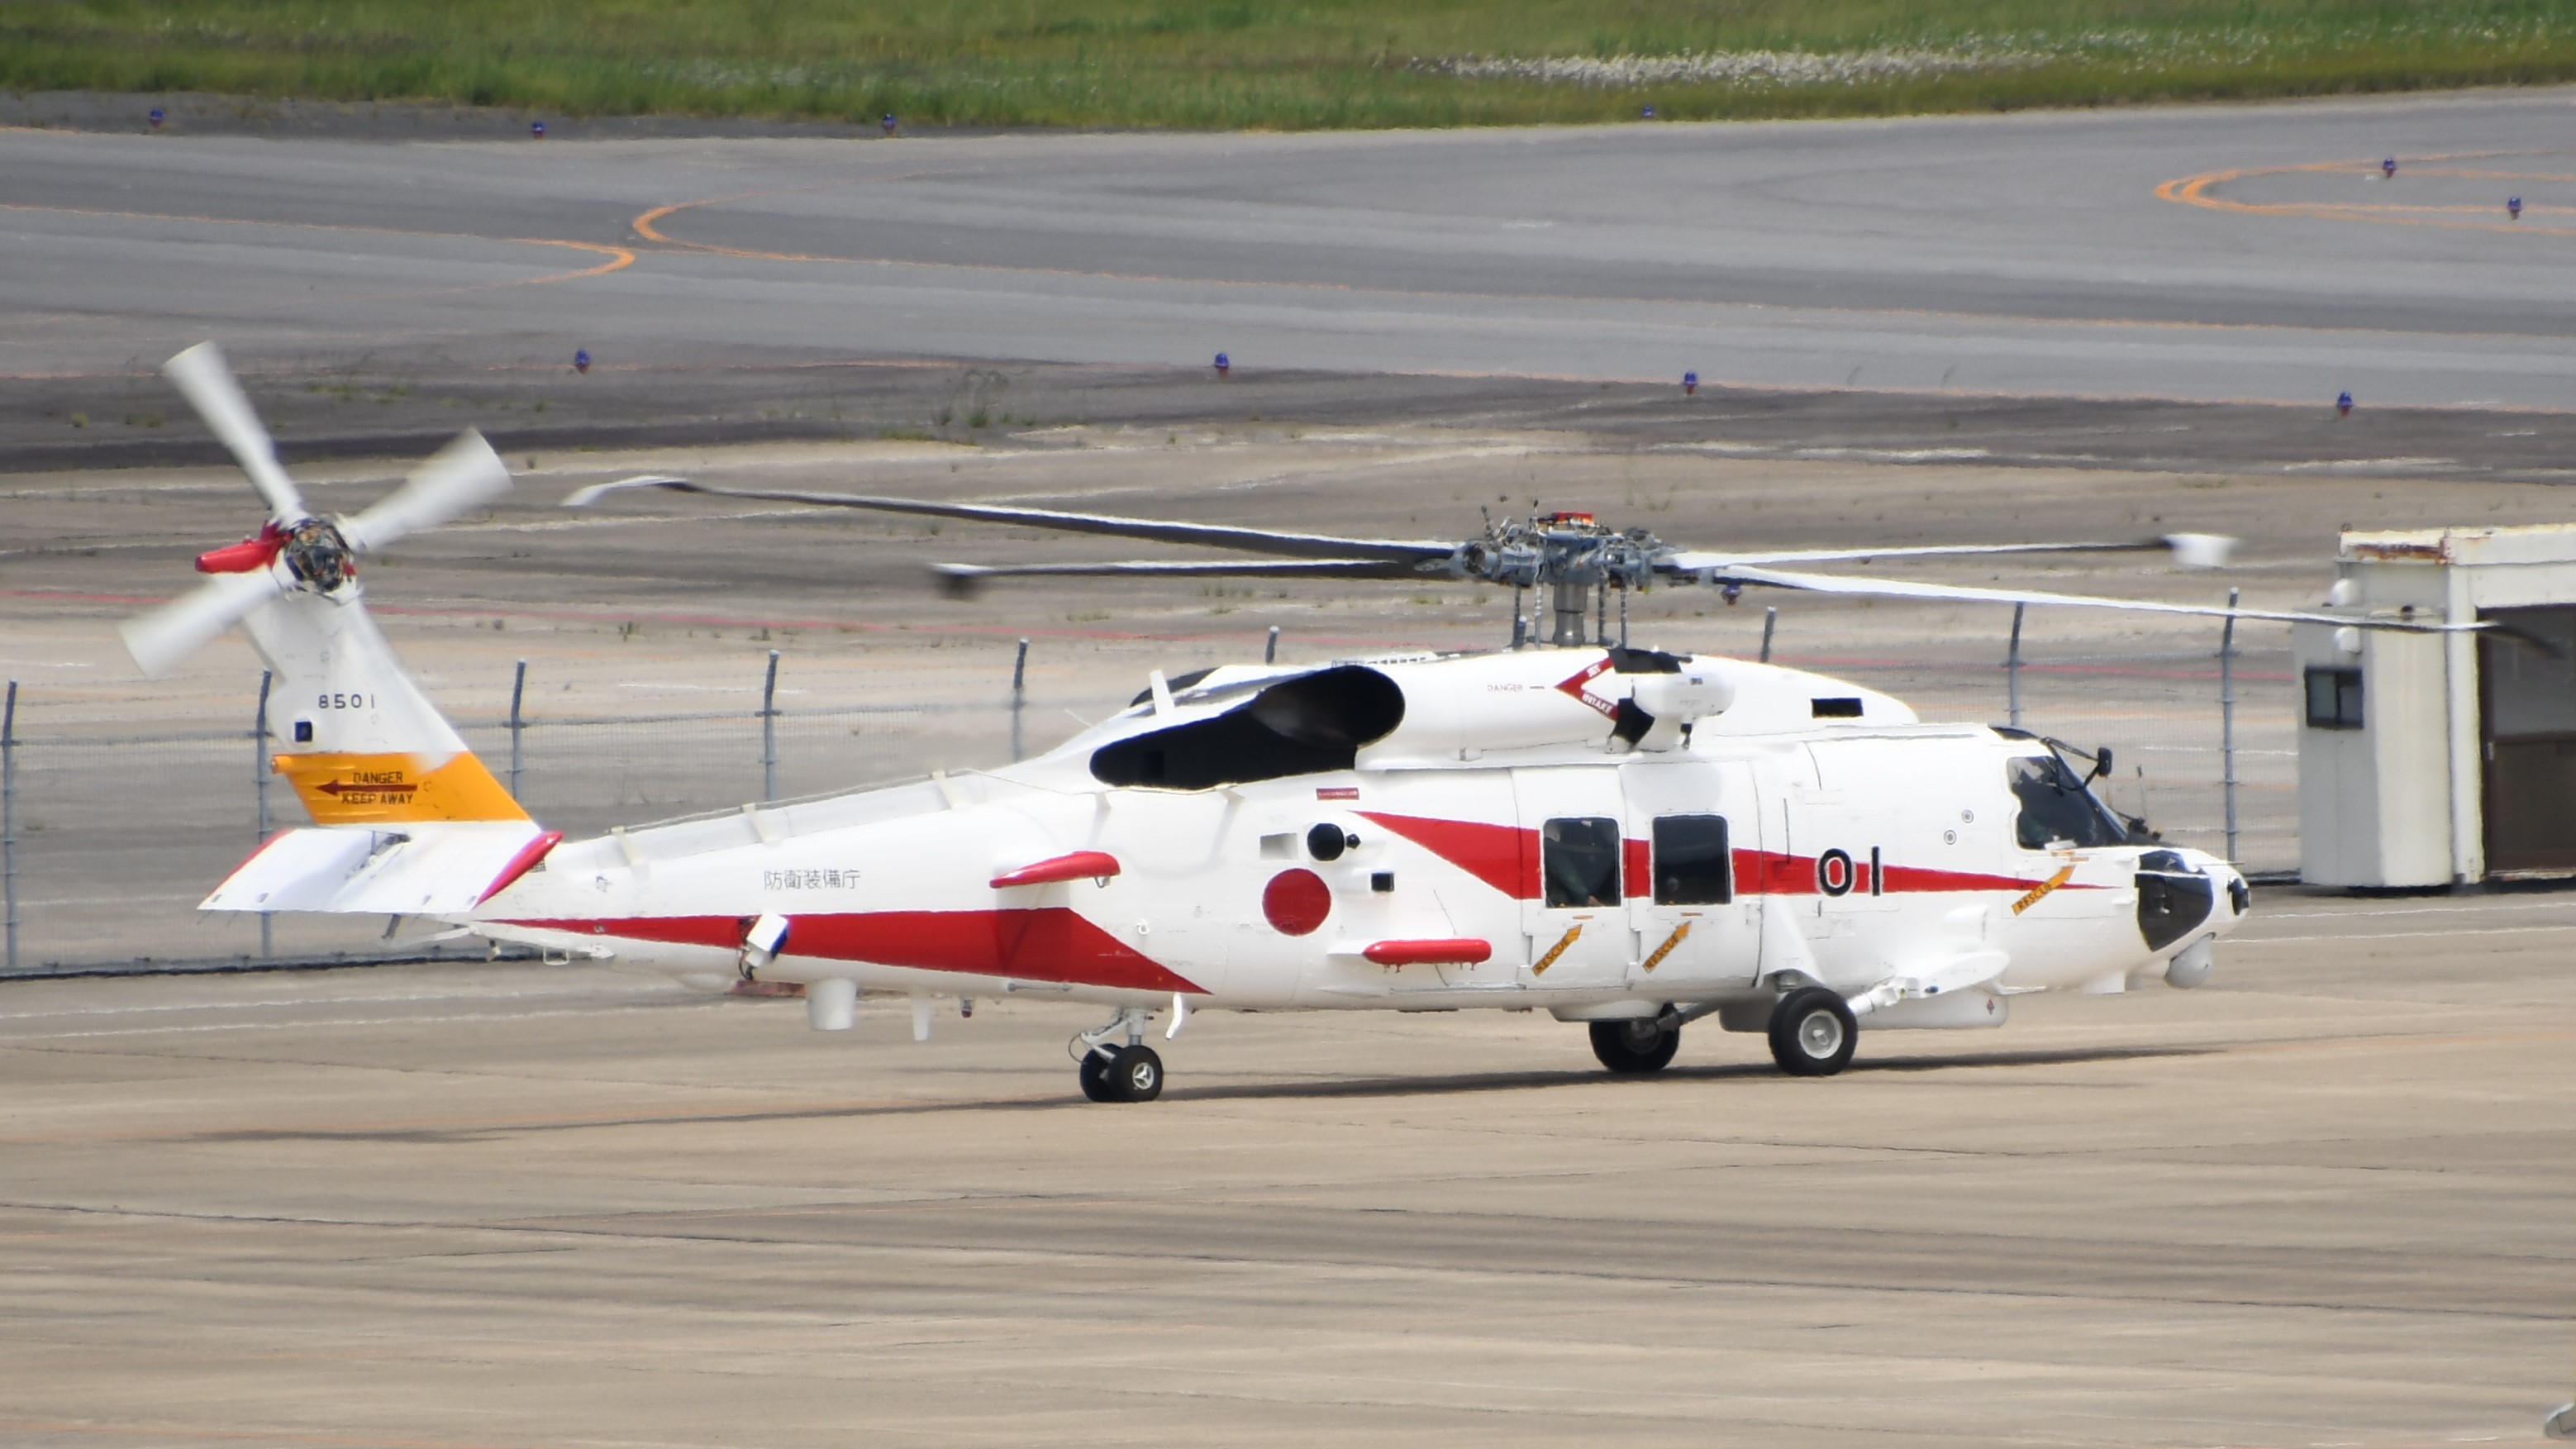 SH-60L (航空機) - Wikipedia